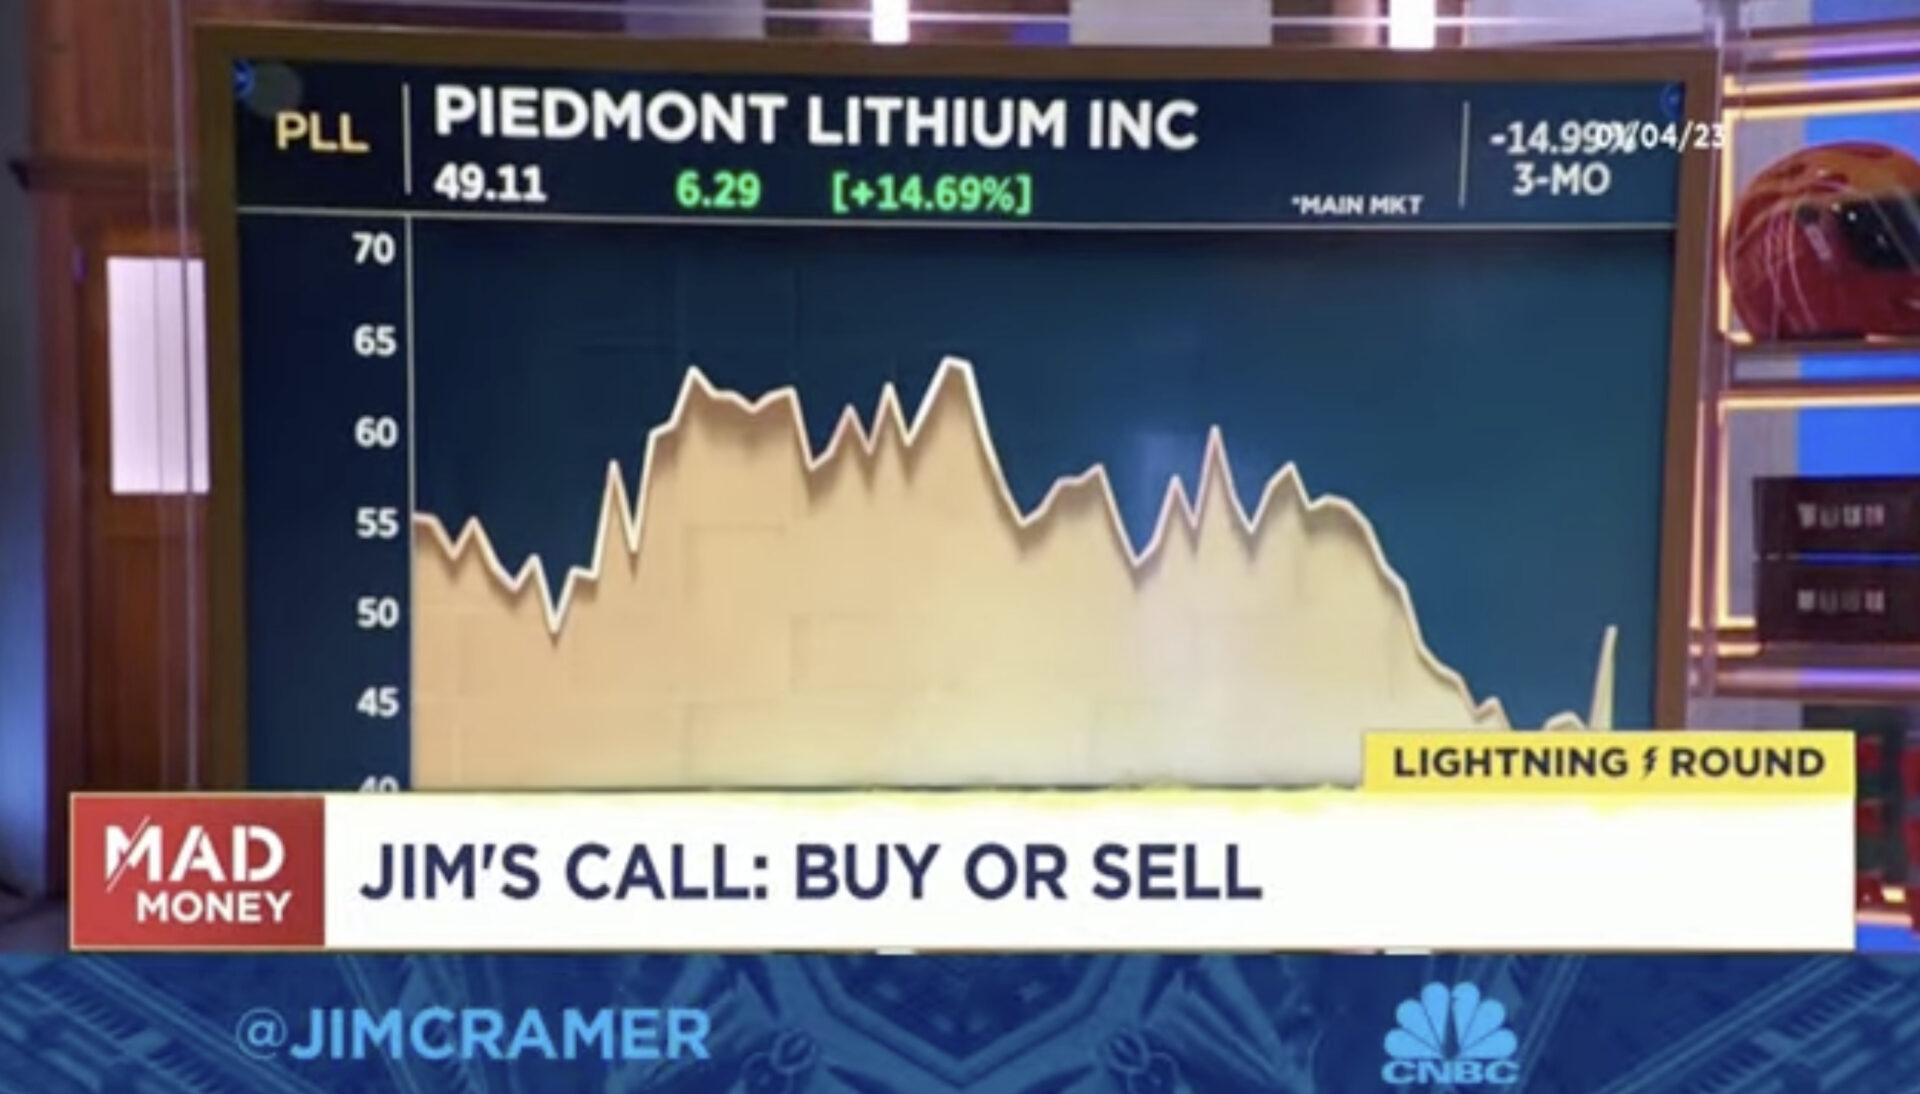 Piedmont Lithium Inc